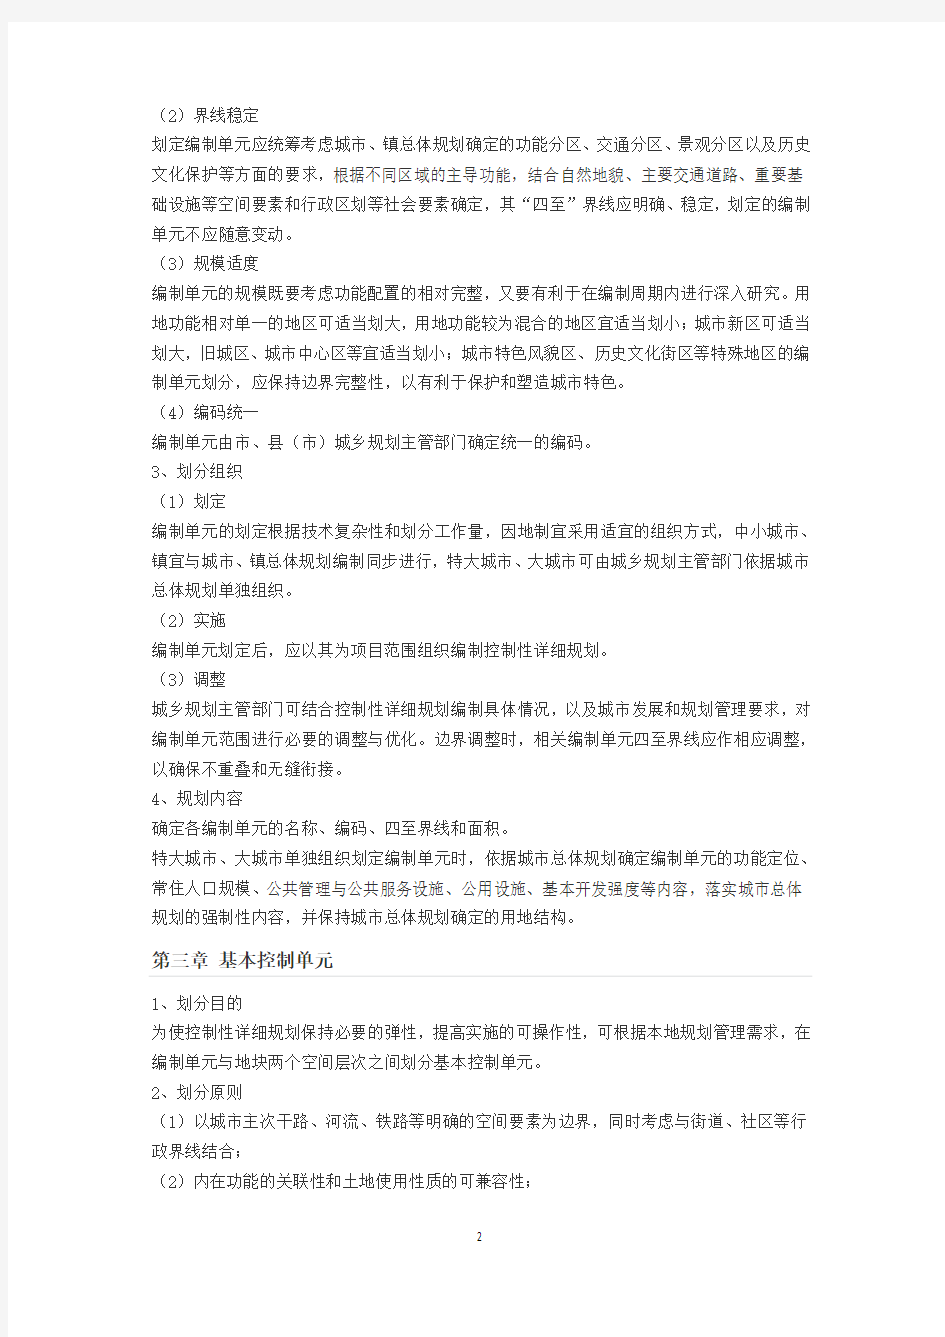 江苏省控制性详细规划编制导则2012